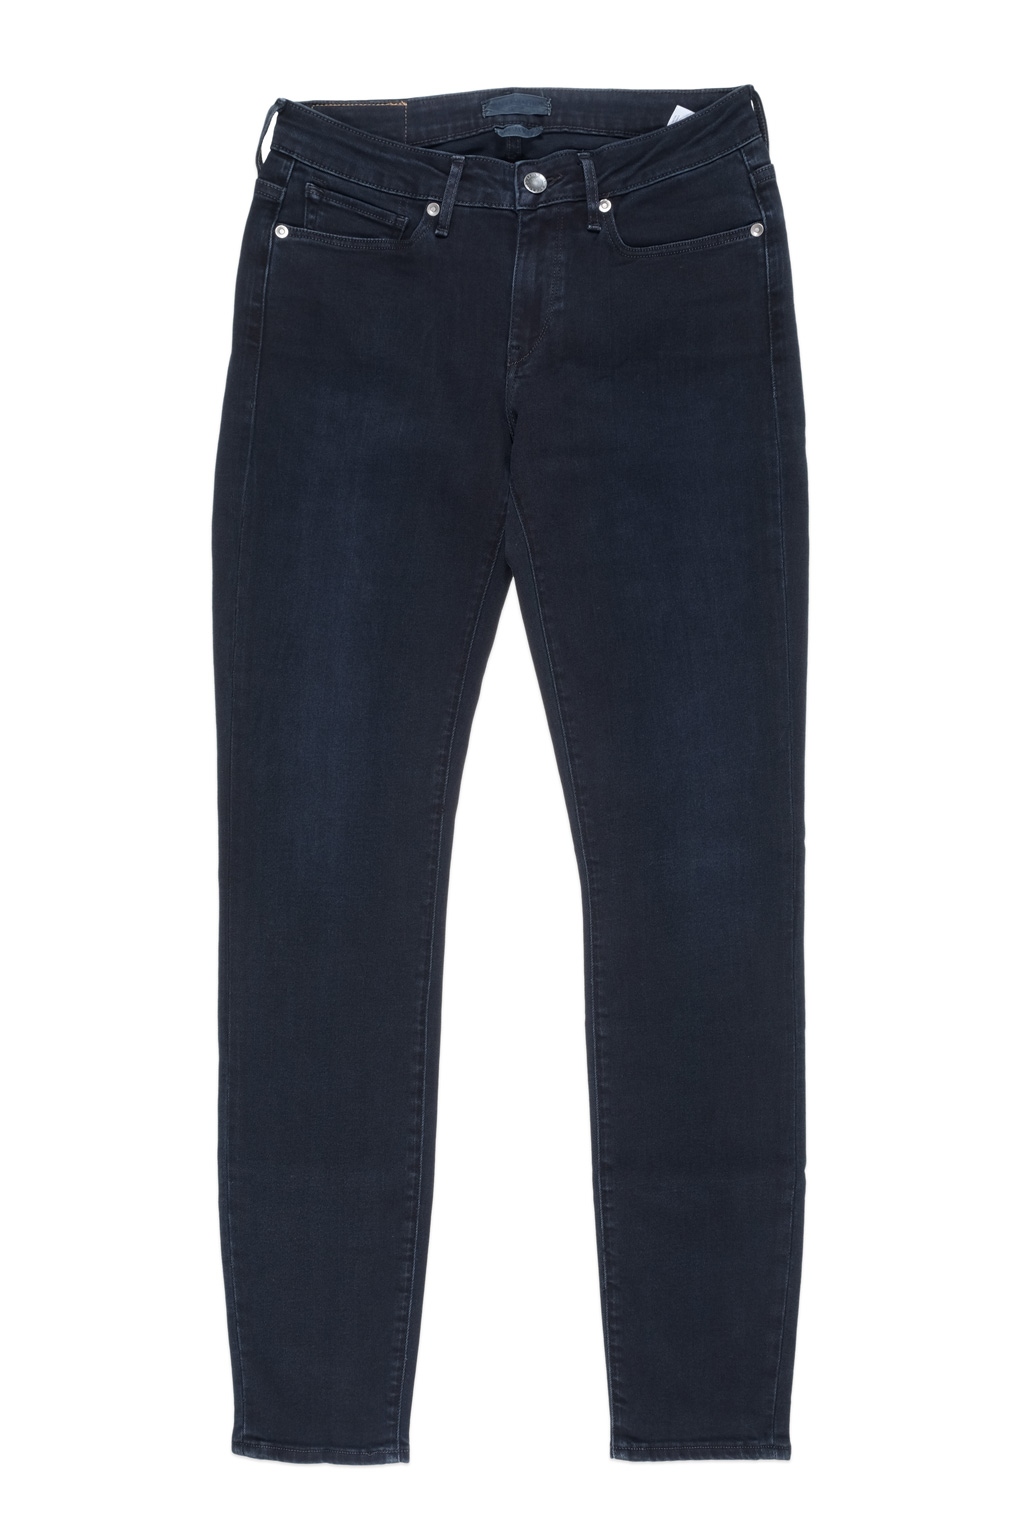 Sale 40% off - Levi's Women's Jeans Empire Pavement - E35 Shop